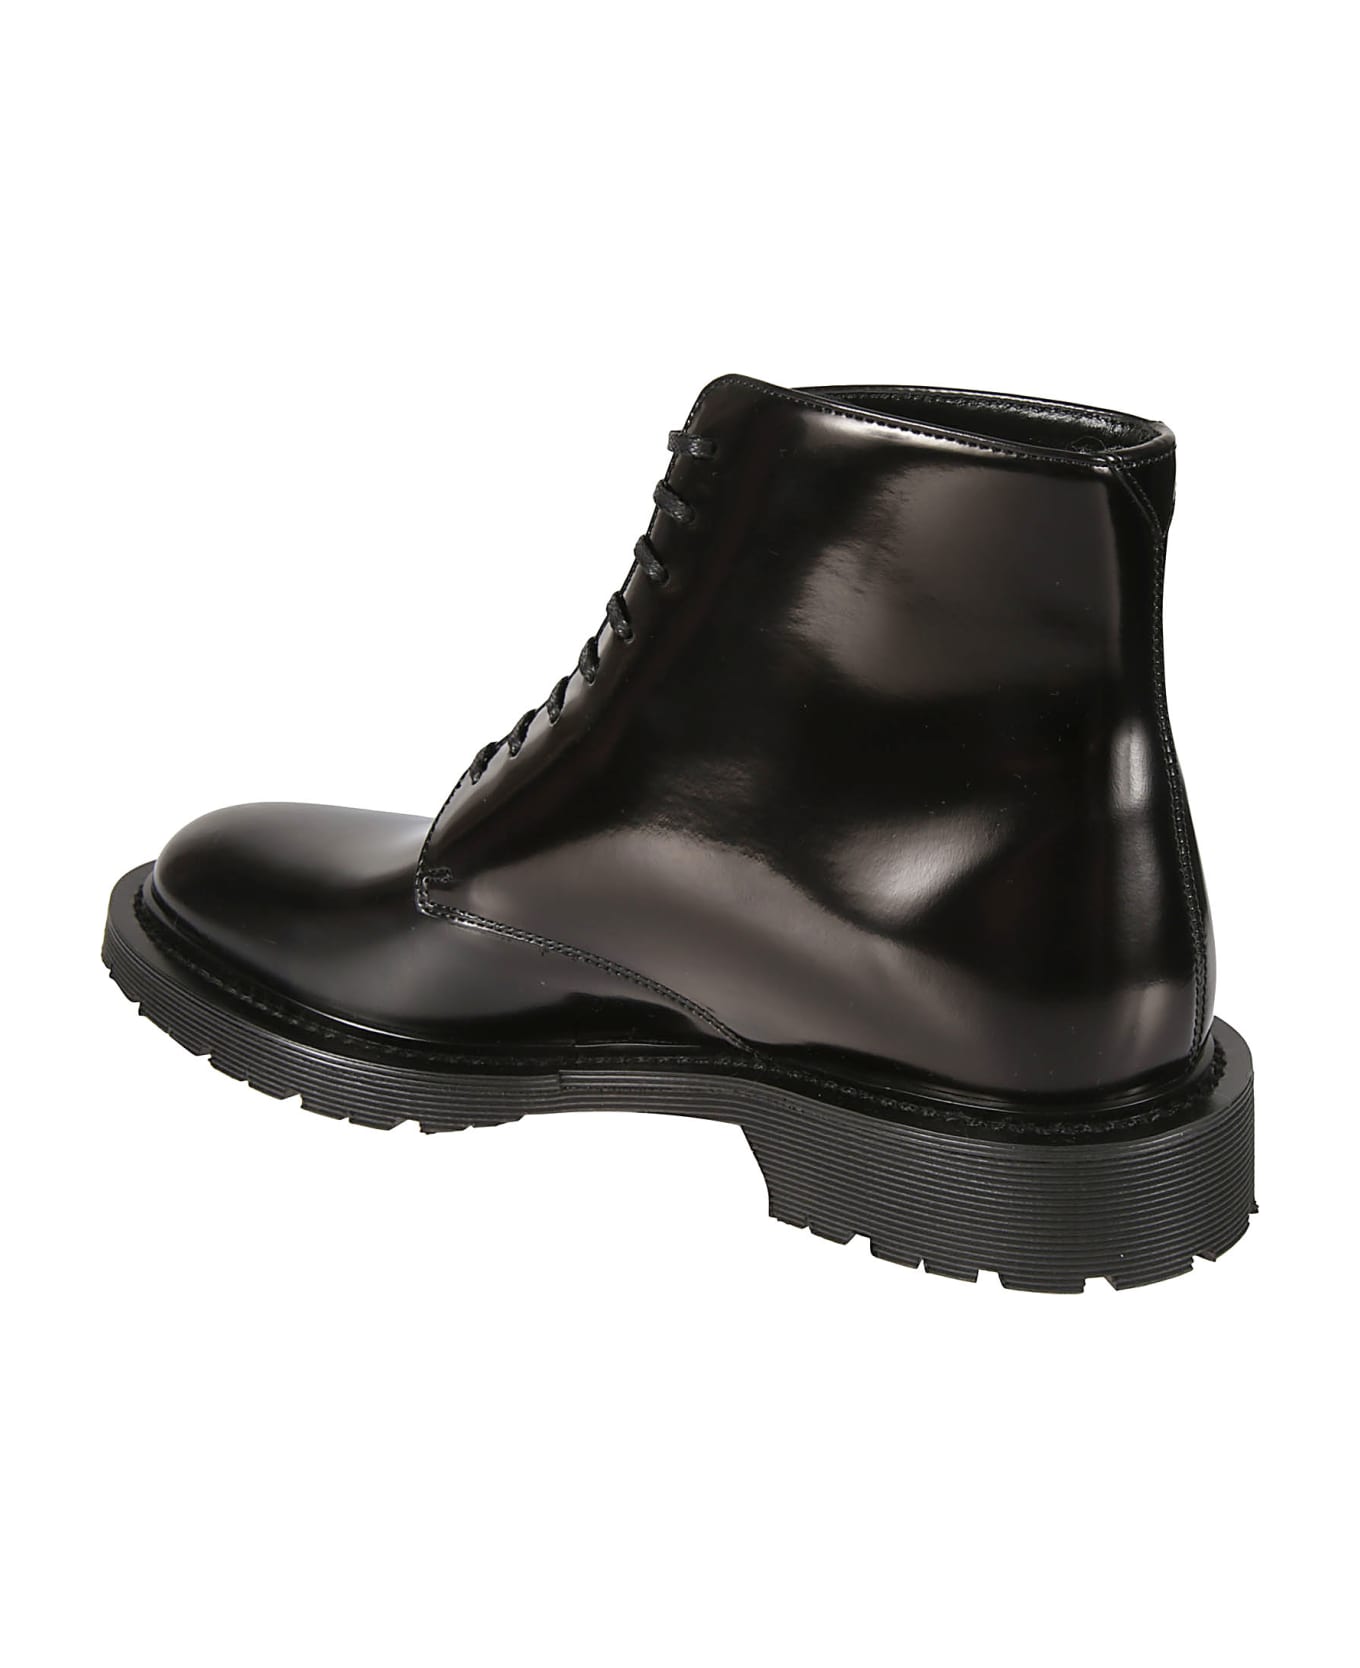 Saint Laurent Army 20 Lace-up Boots - Black